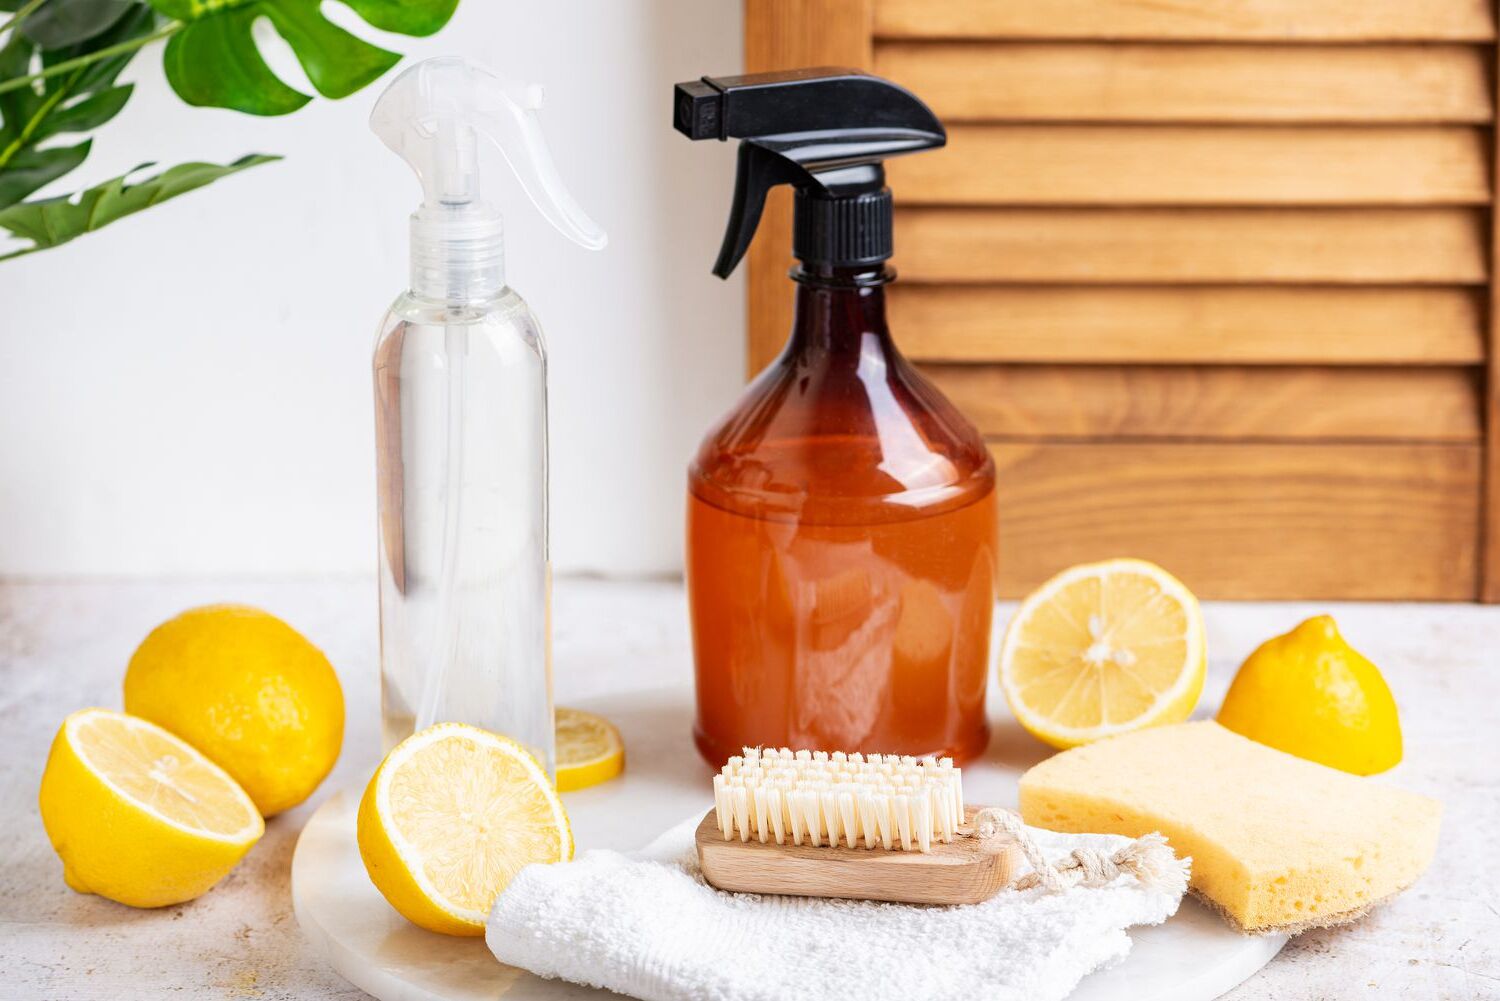 DIY Homemade Shower Cleaner Guide